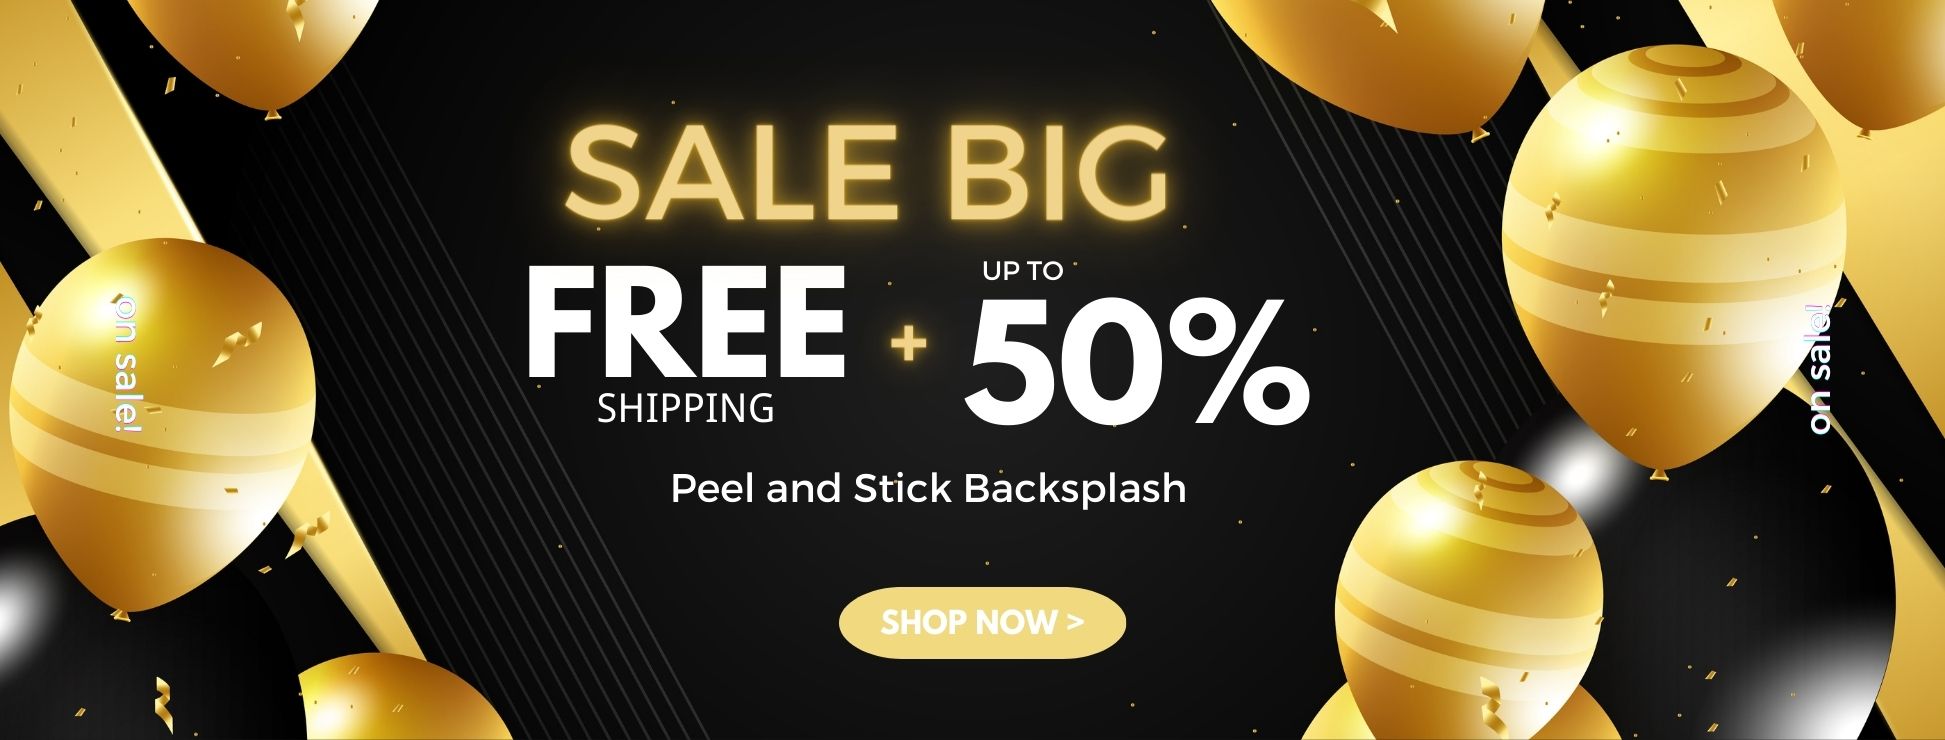 big sale up to 50% peel and stick backsplash